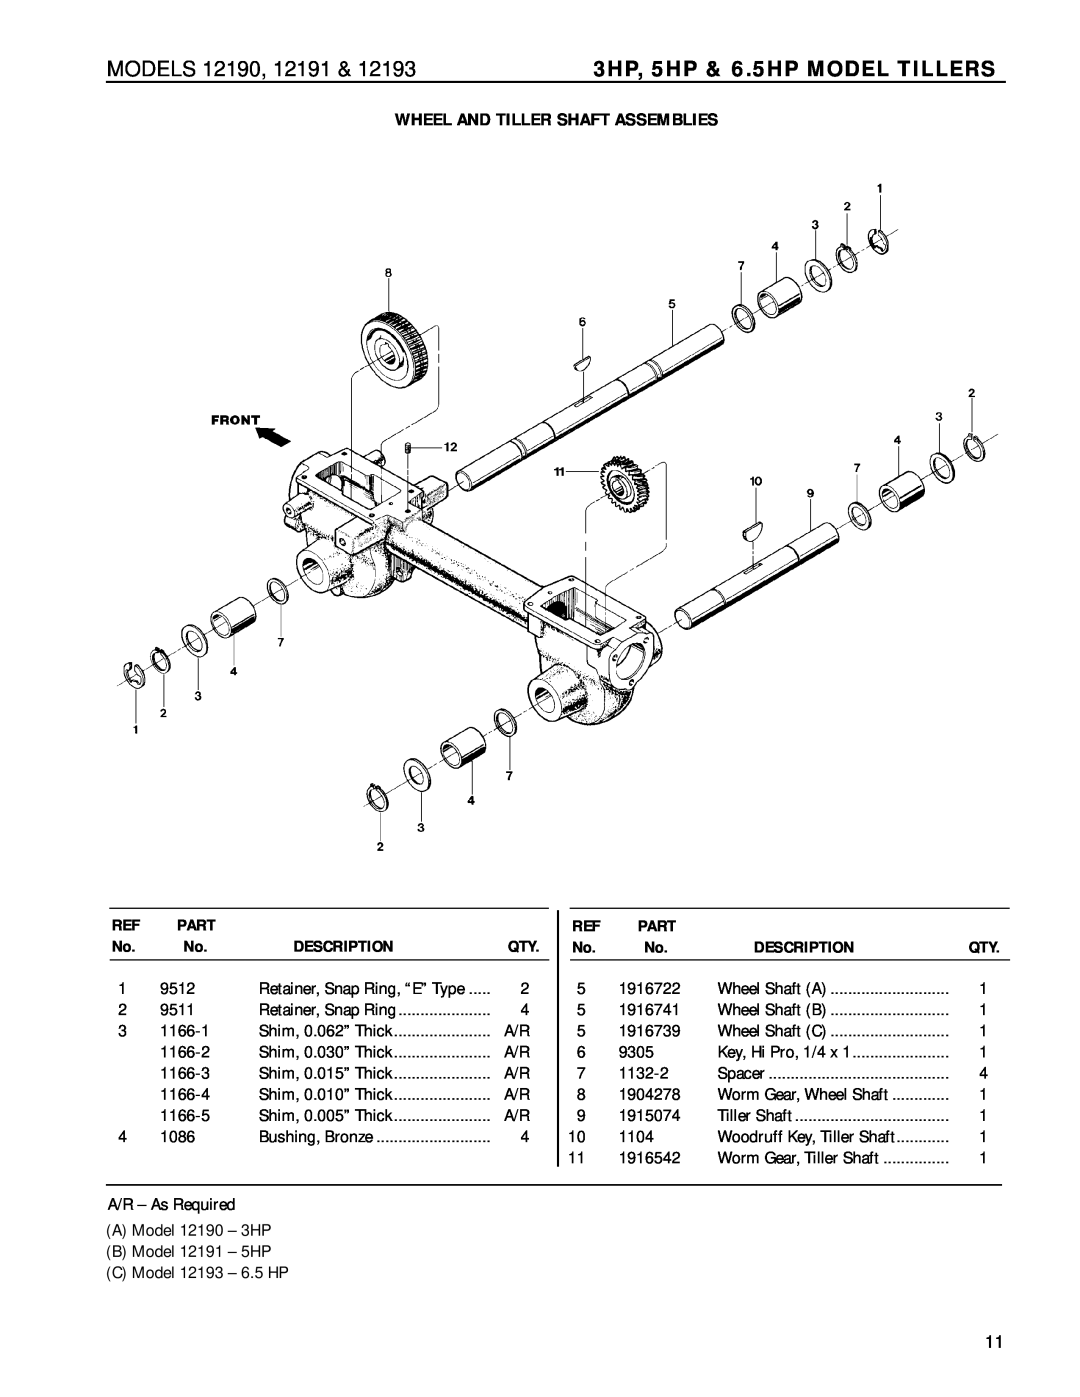 Troy-Bilt 12193 - 6.5HP Wheel And Tiller Shaft Assemblies, MODELS 12190, 3HP, 5HP & 6.5HP MODEL TILLERS, Part, Description 